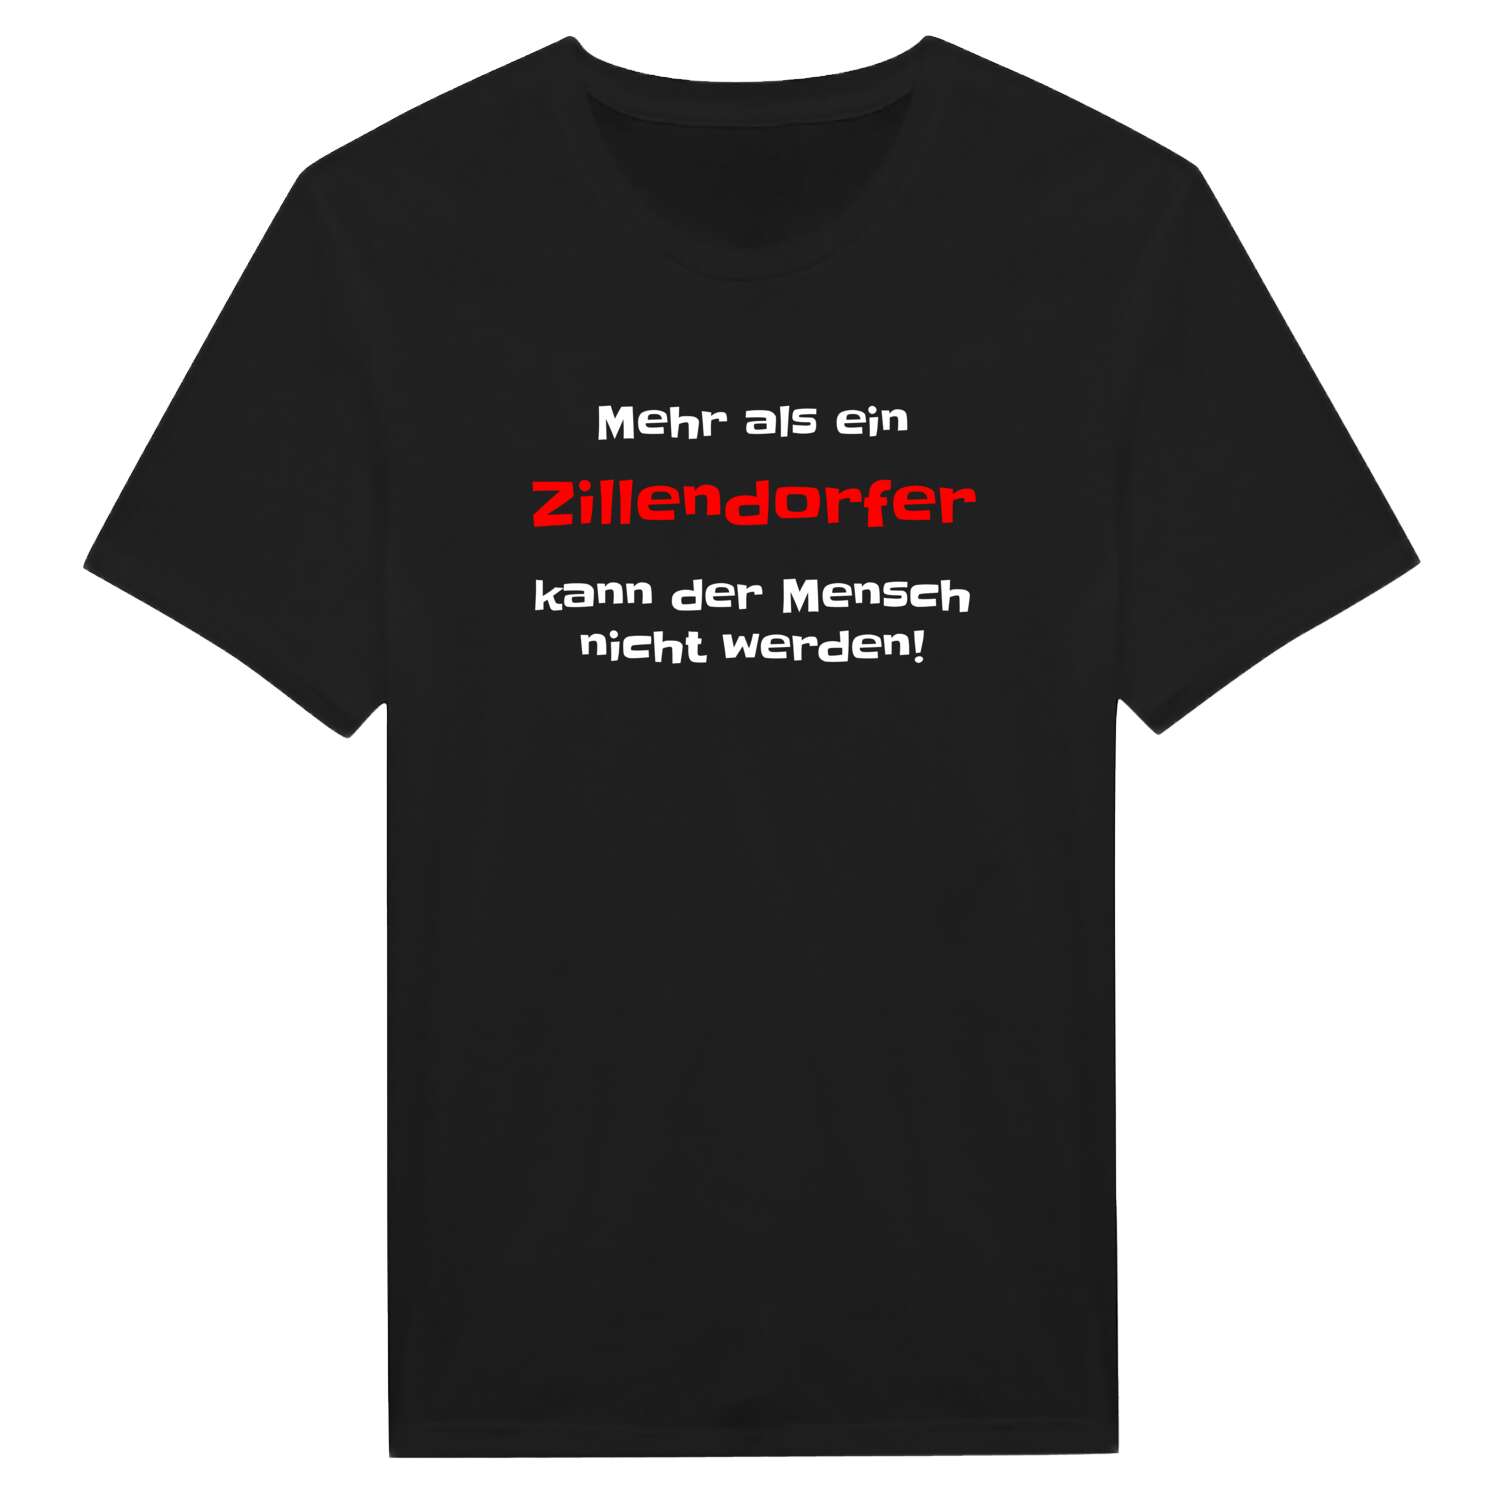 Zillendorf T-Shirt »Mehr als ein«